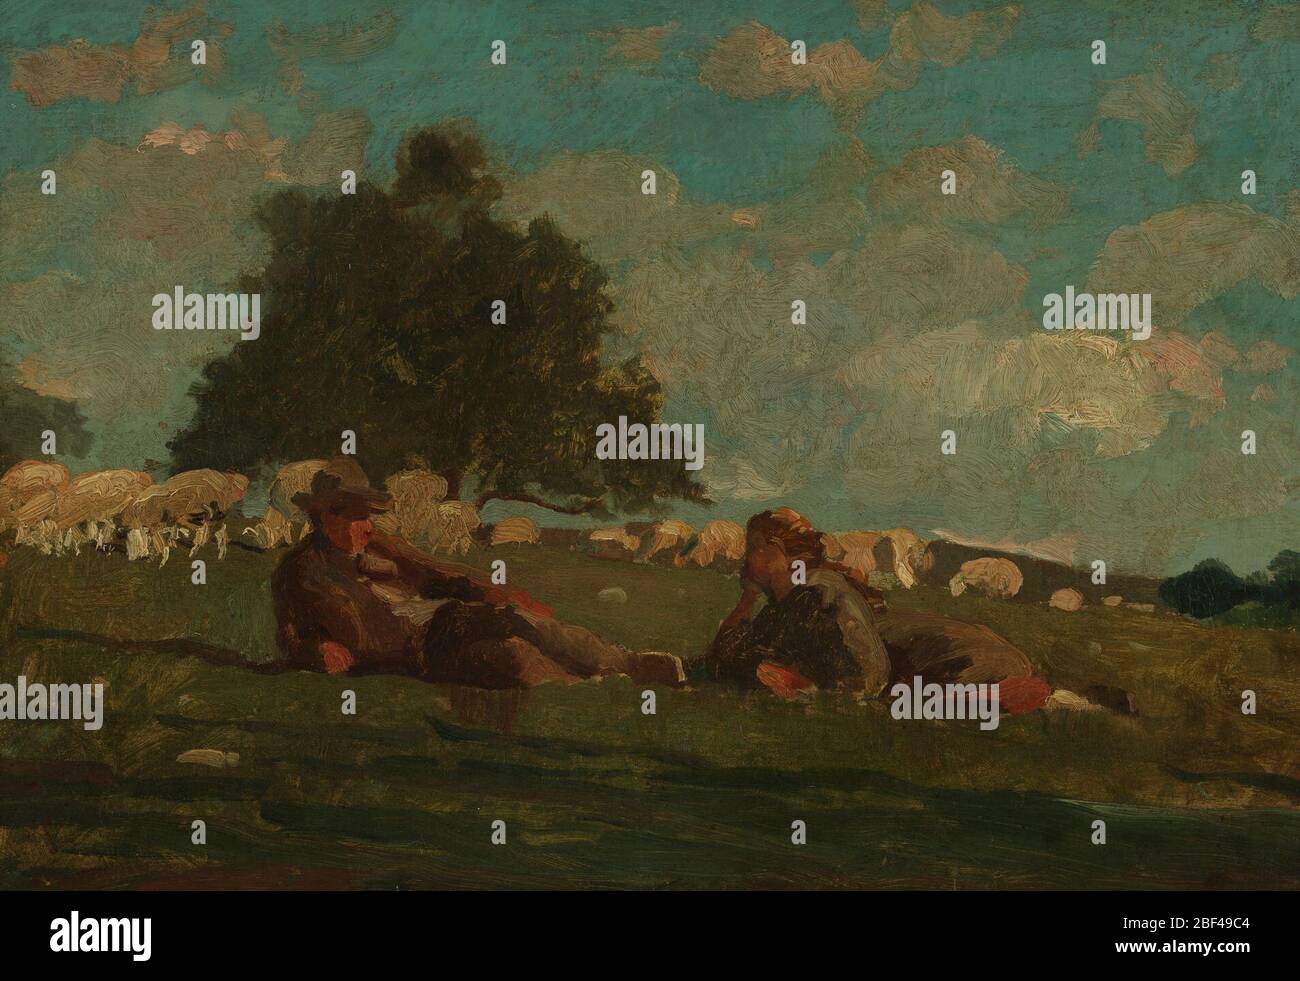 Junge und Mädchen in einem Feld mit Schafen. Unter einem sonnigen Himmel mit hellen windigen Wolken ruhen ein Junge und ein Mädchen auf einer Wiese, während ein großer Baum und weidende Schafe hinter ihnen stehen. Stockfoto